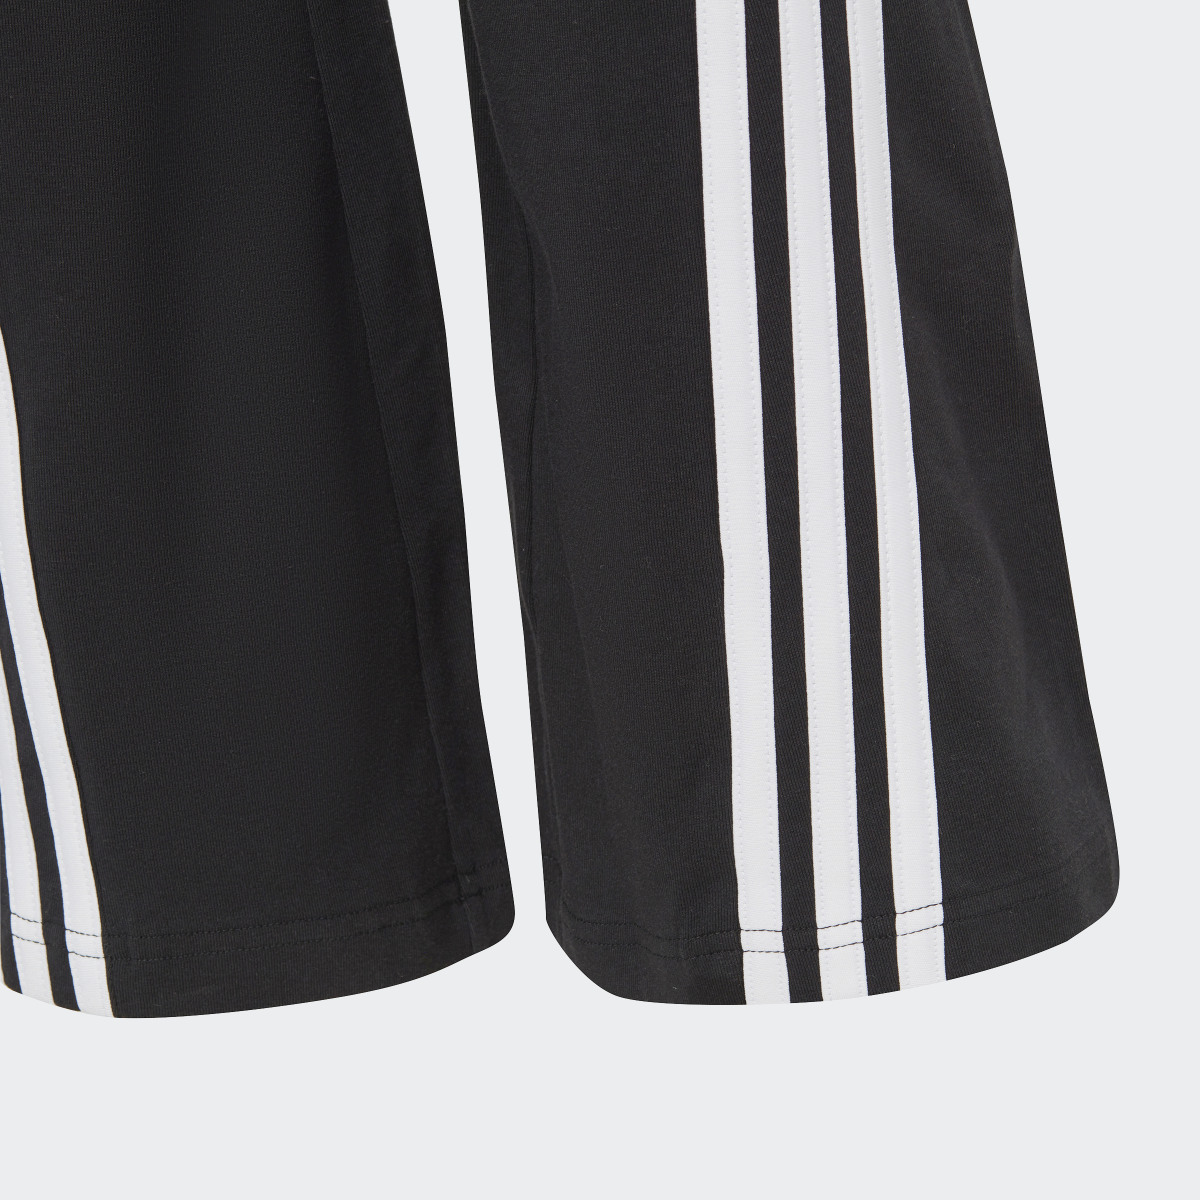 Adidas Leggings à Boca-de-sino em Algodão 3-Stripes Future Icons. 4